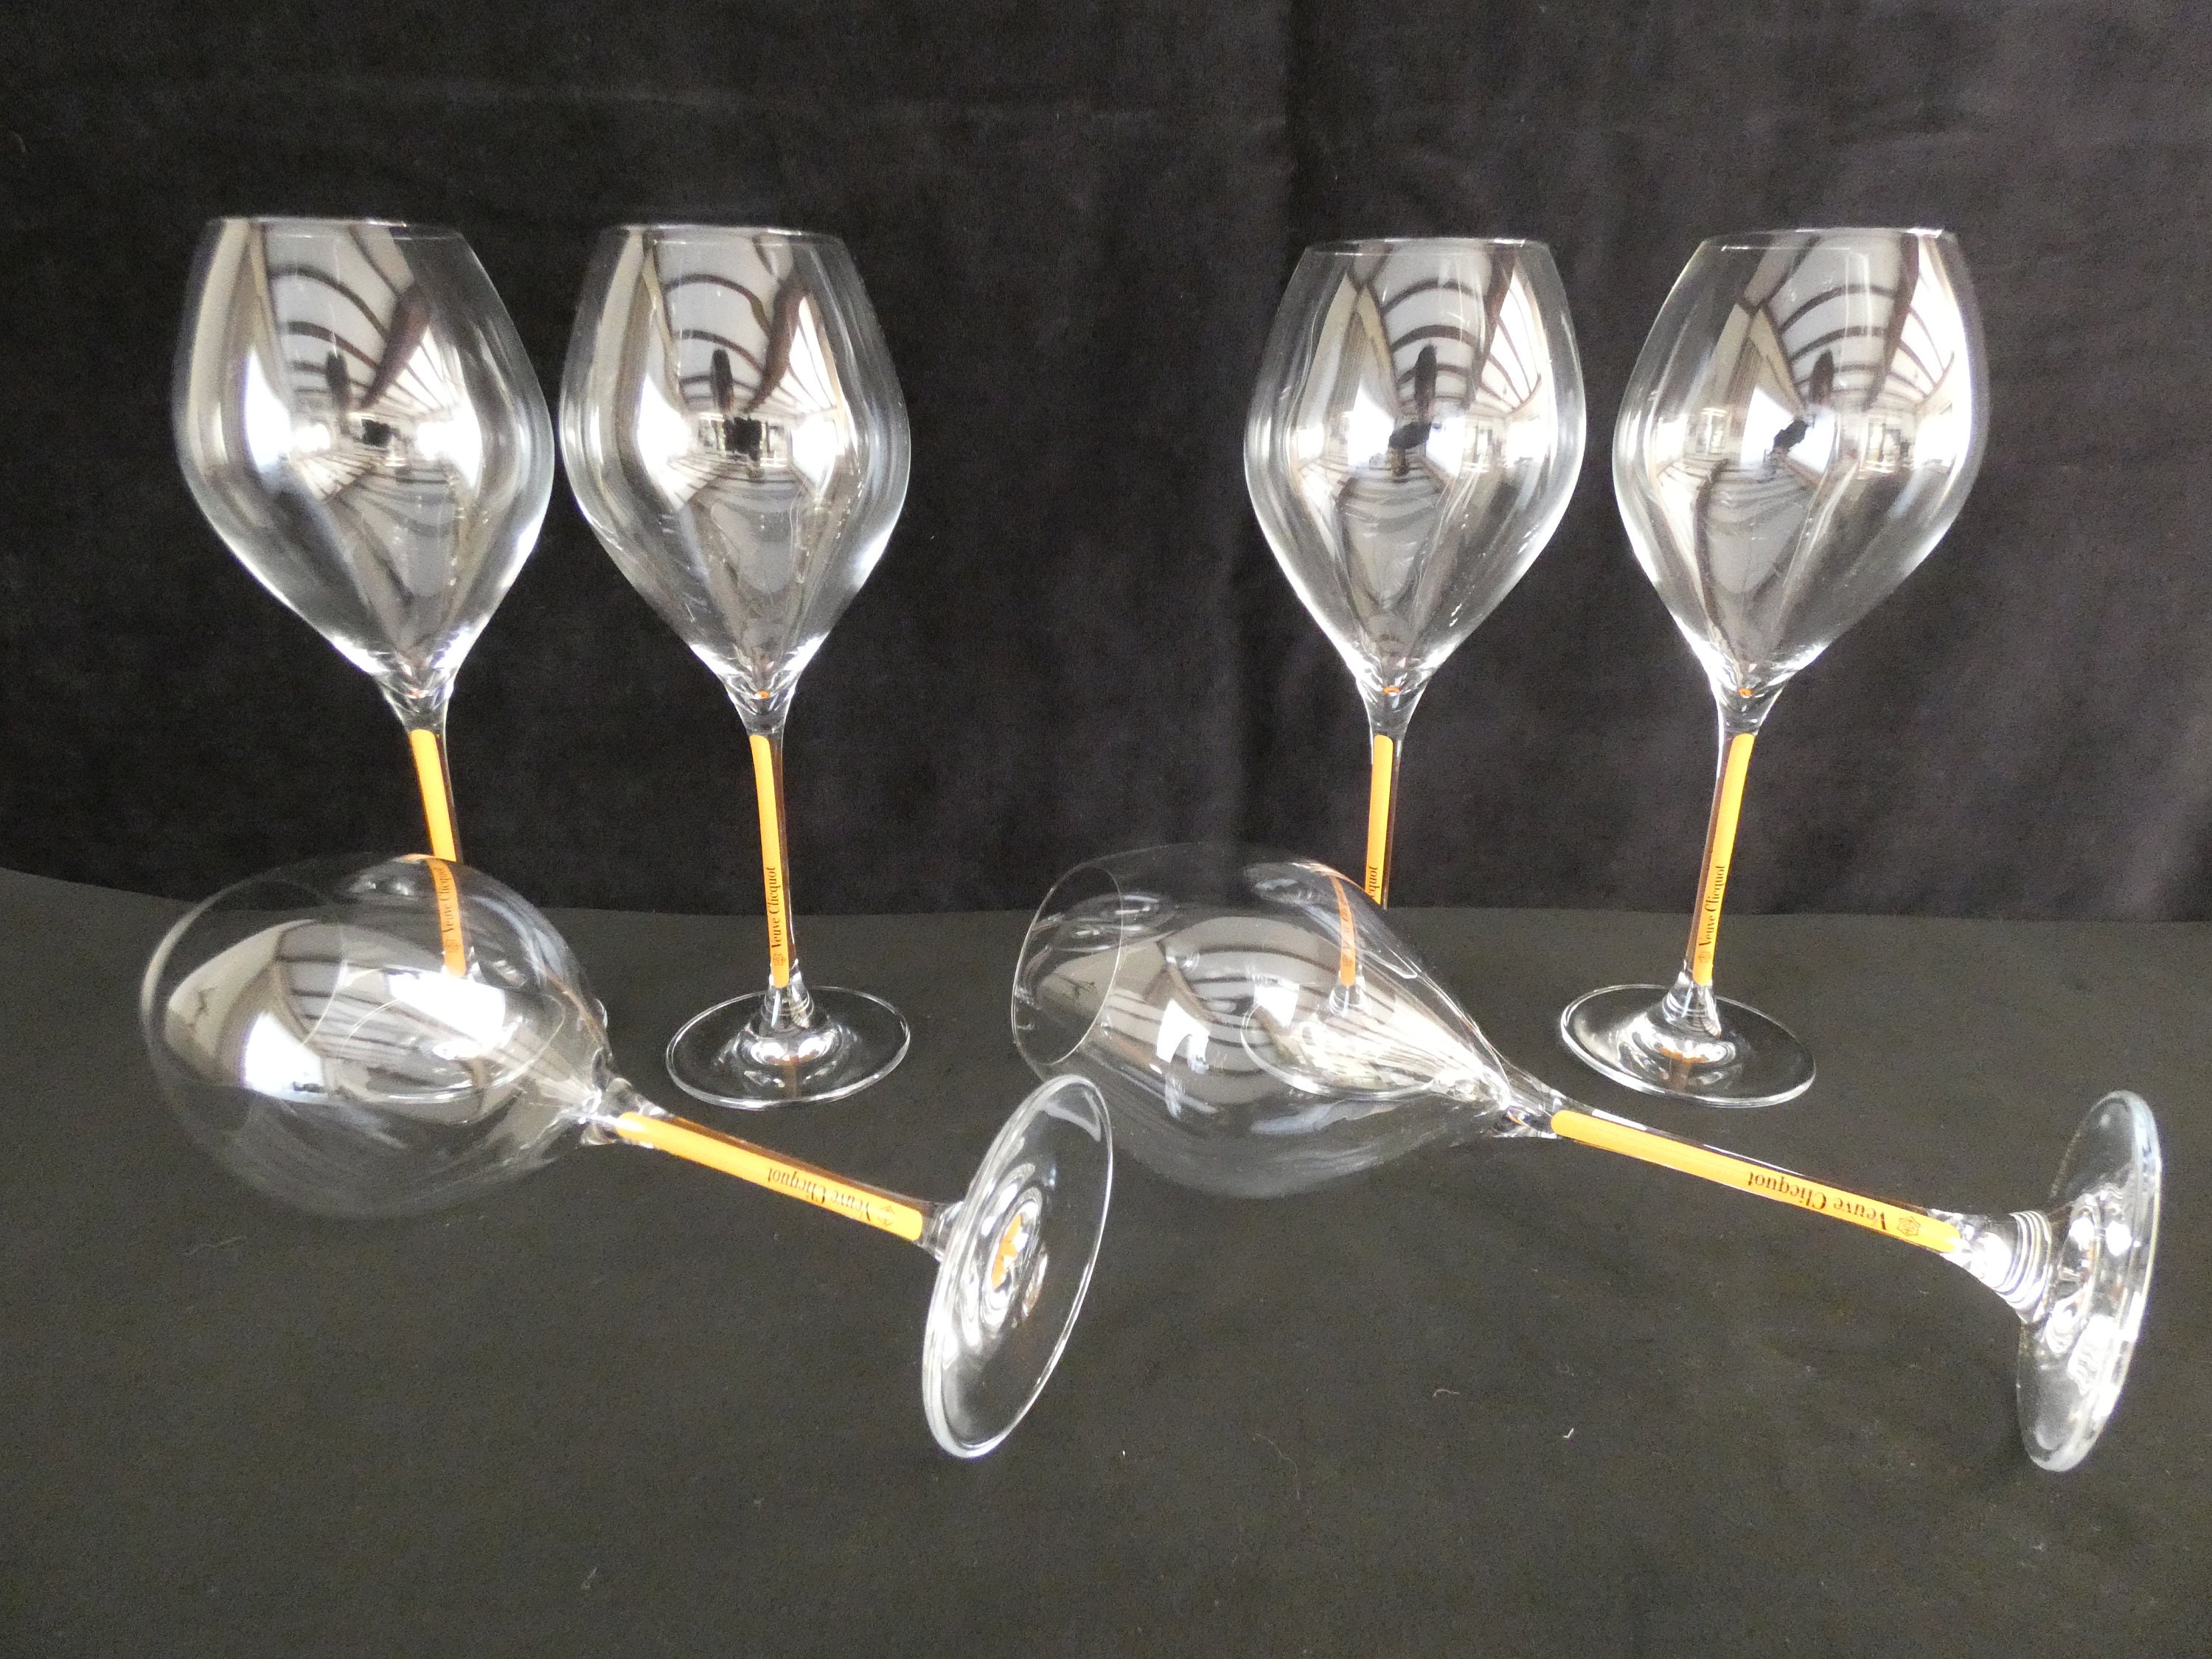 Orange Champagne Flutes Veuve Cliquot, per glass – Vivid Hue Home